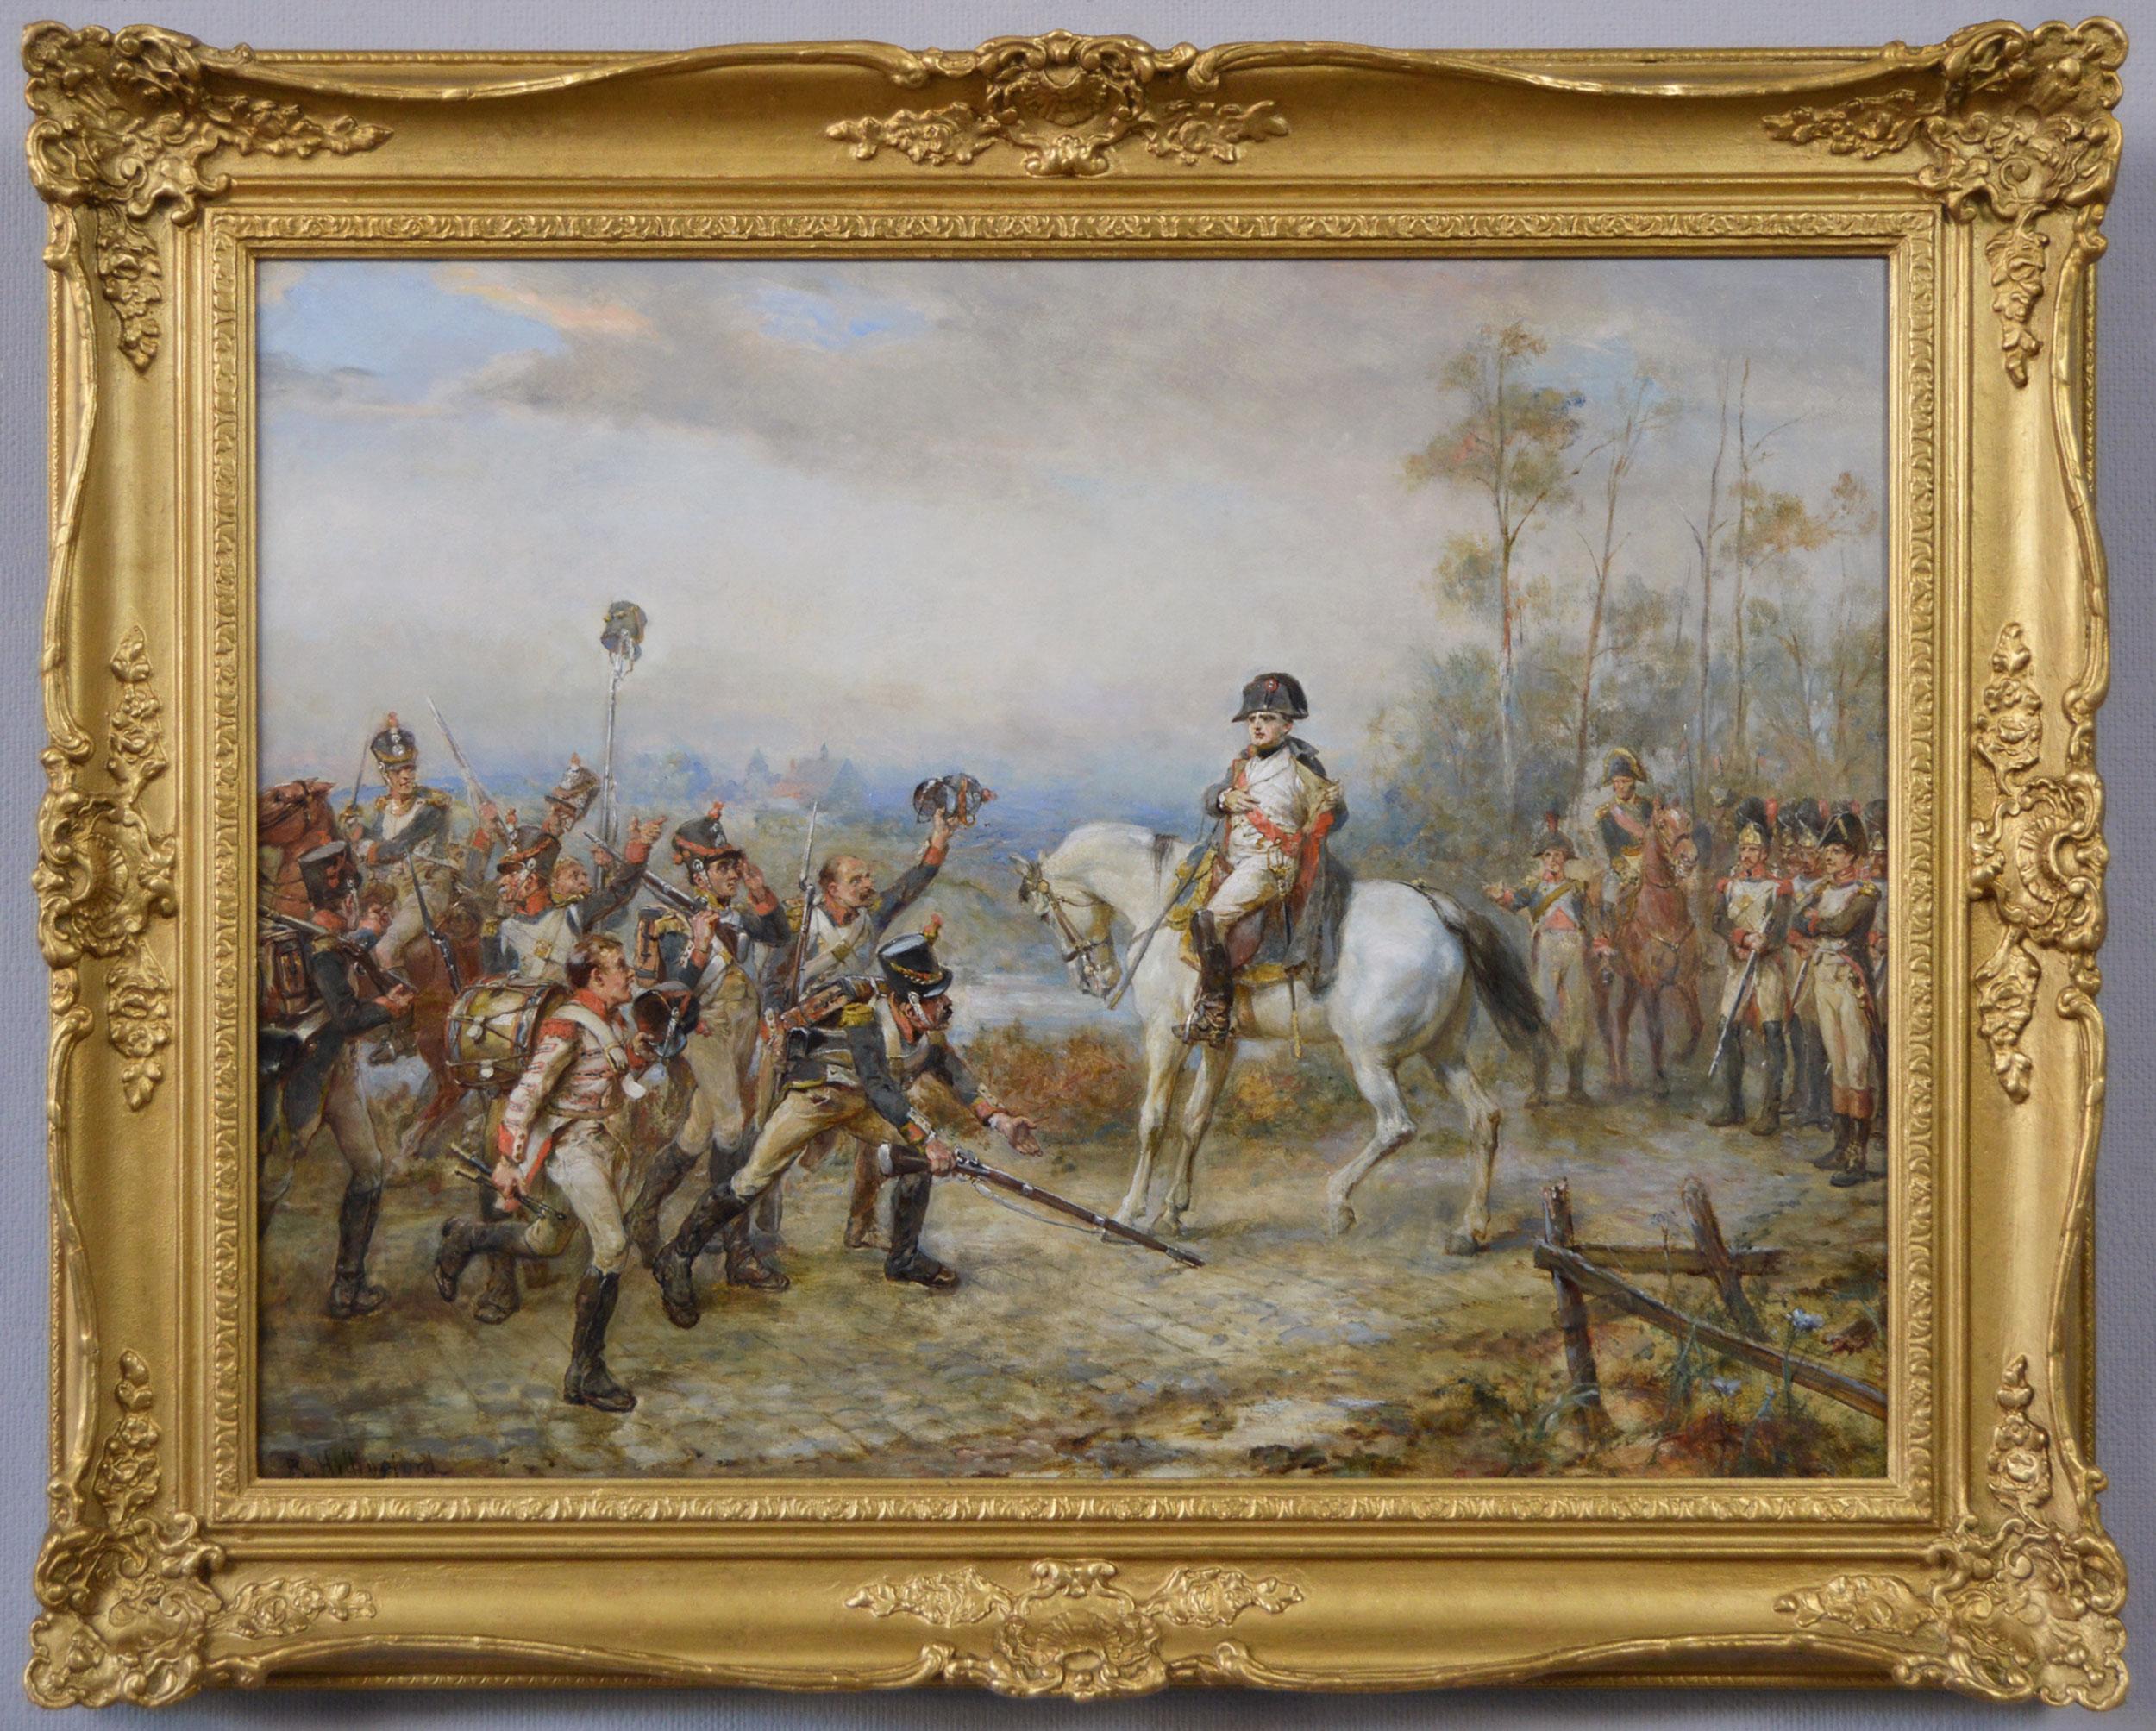 Figurative Painting Robert Alexander Hillingford - Peinture à l'huile de genre historique du XIXe siècle représentant les Napoléons retournant d'Elba